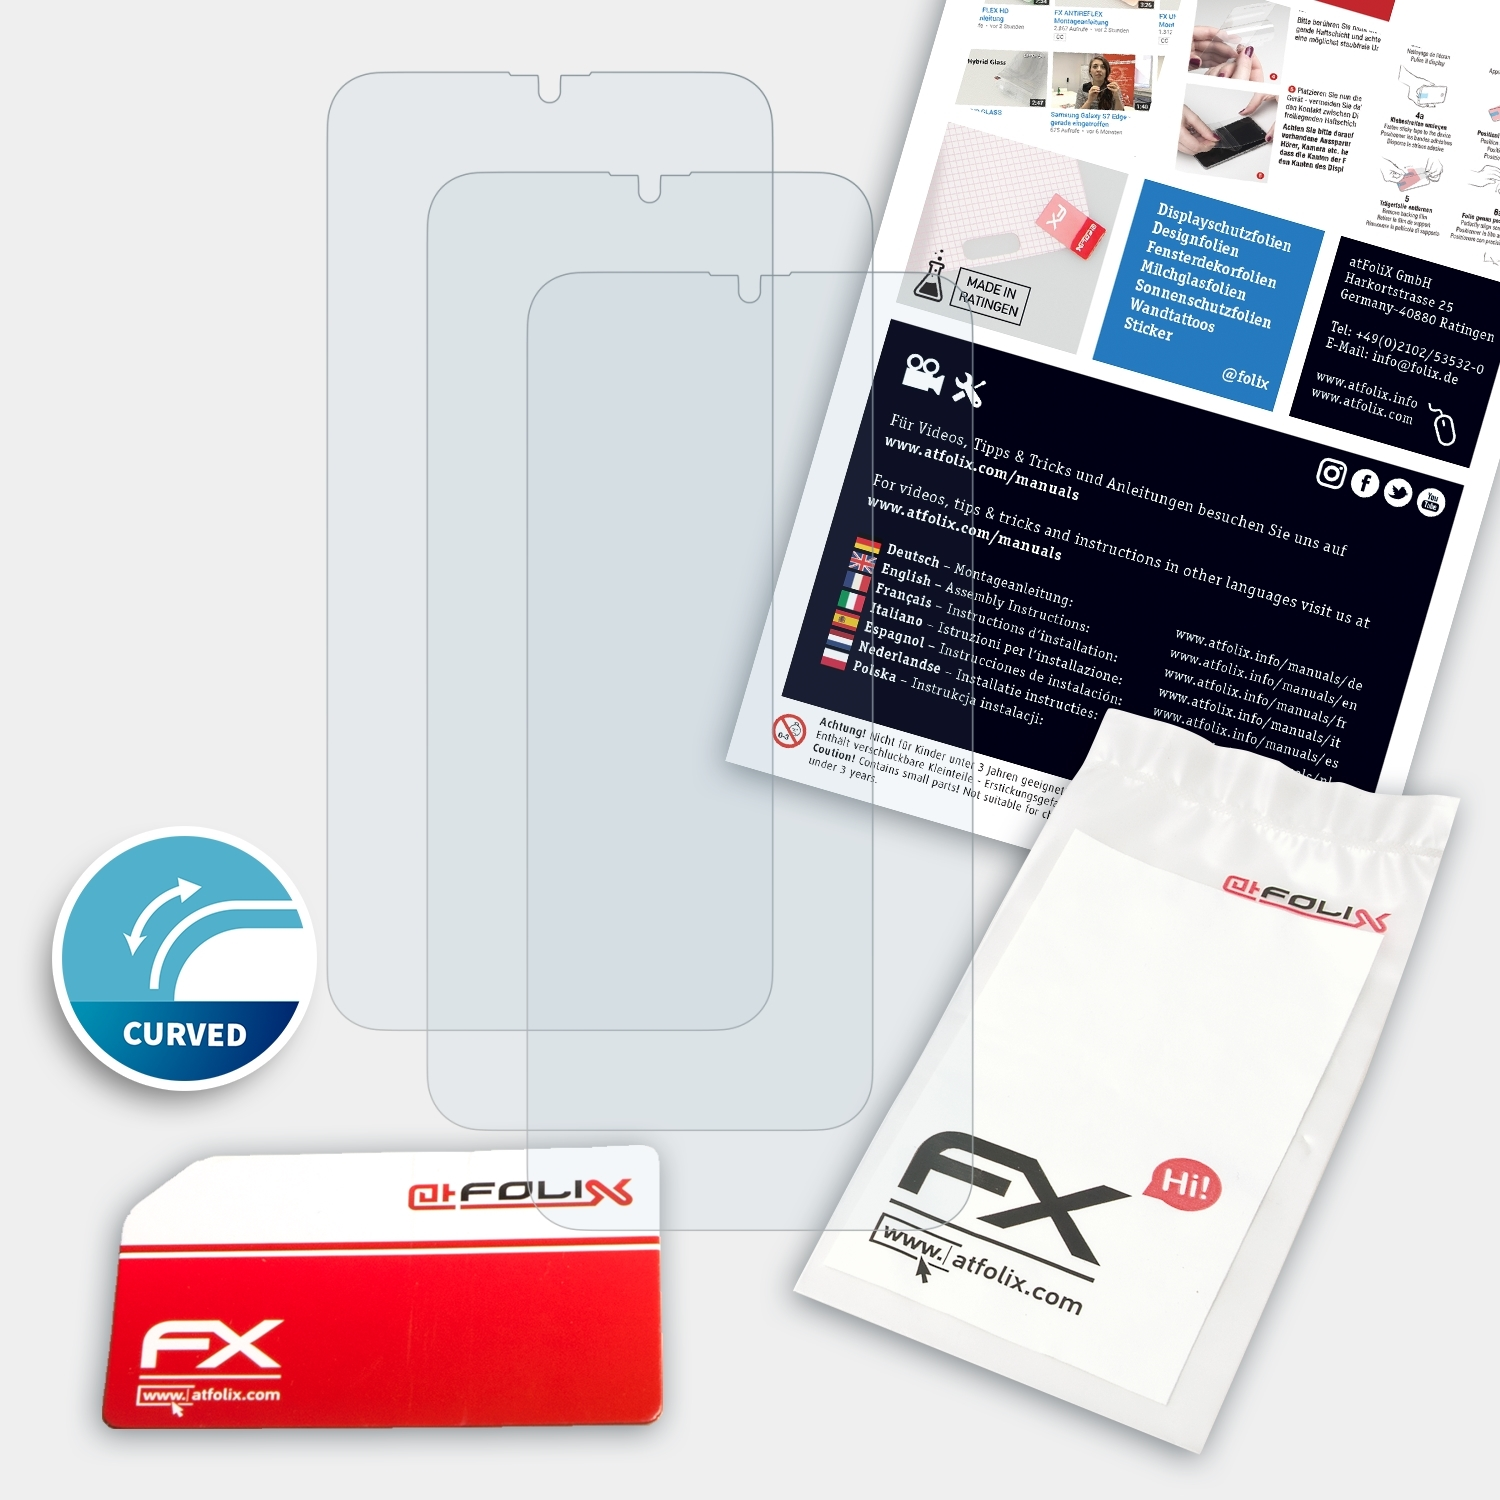 ATFOLIX 3x FX-ActiFleX Displayschutz(für Oppo R17)